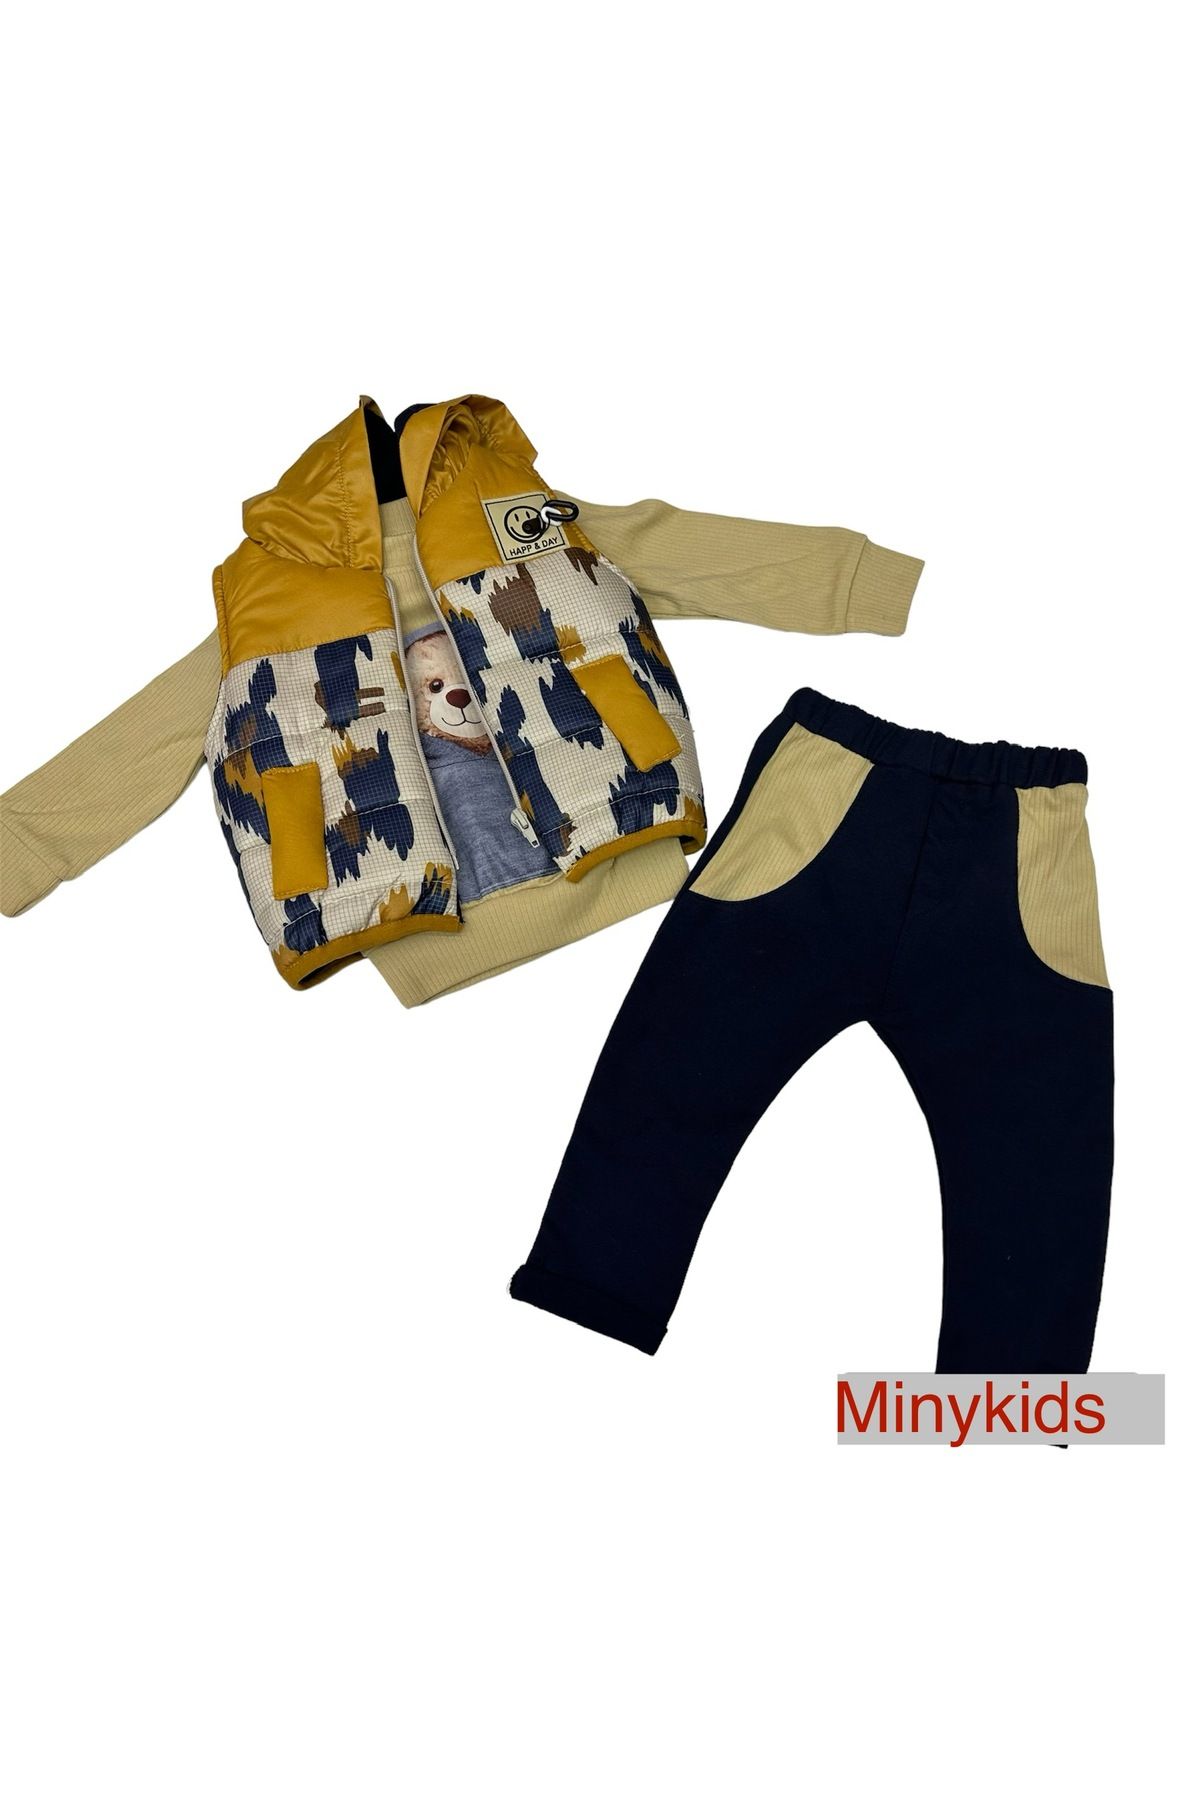 Hippıl Baby Minykids Bebek Takımı